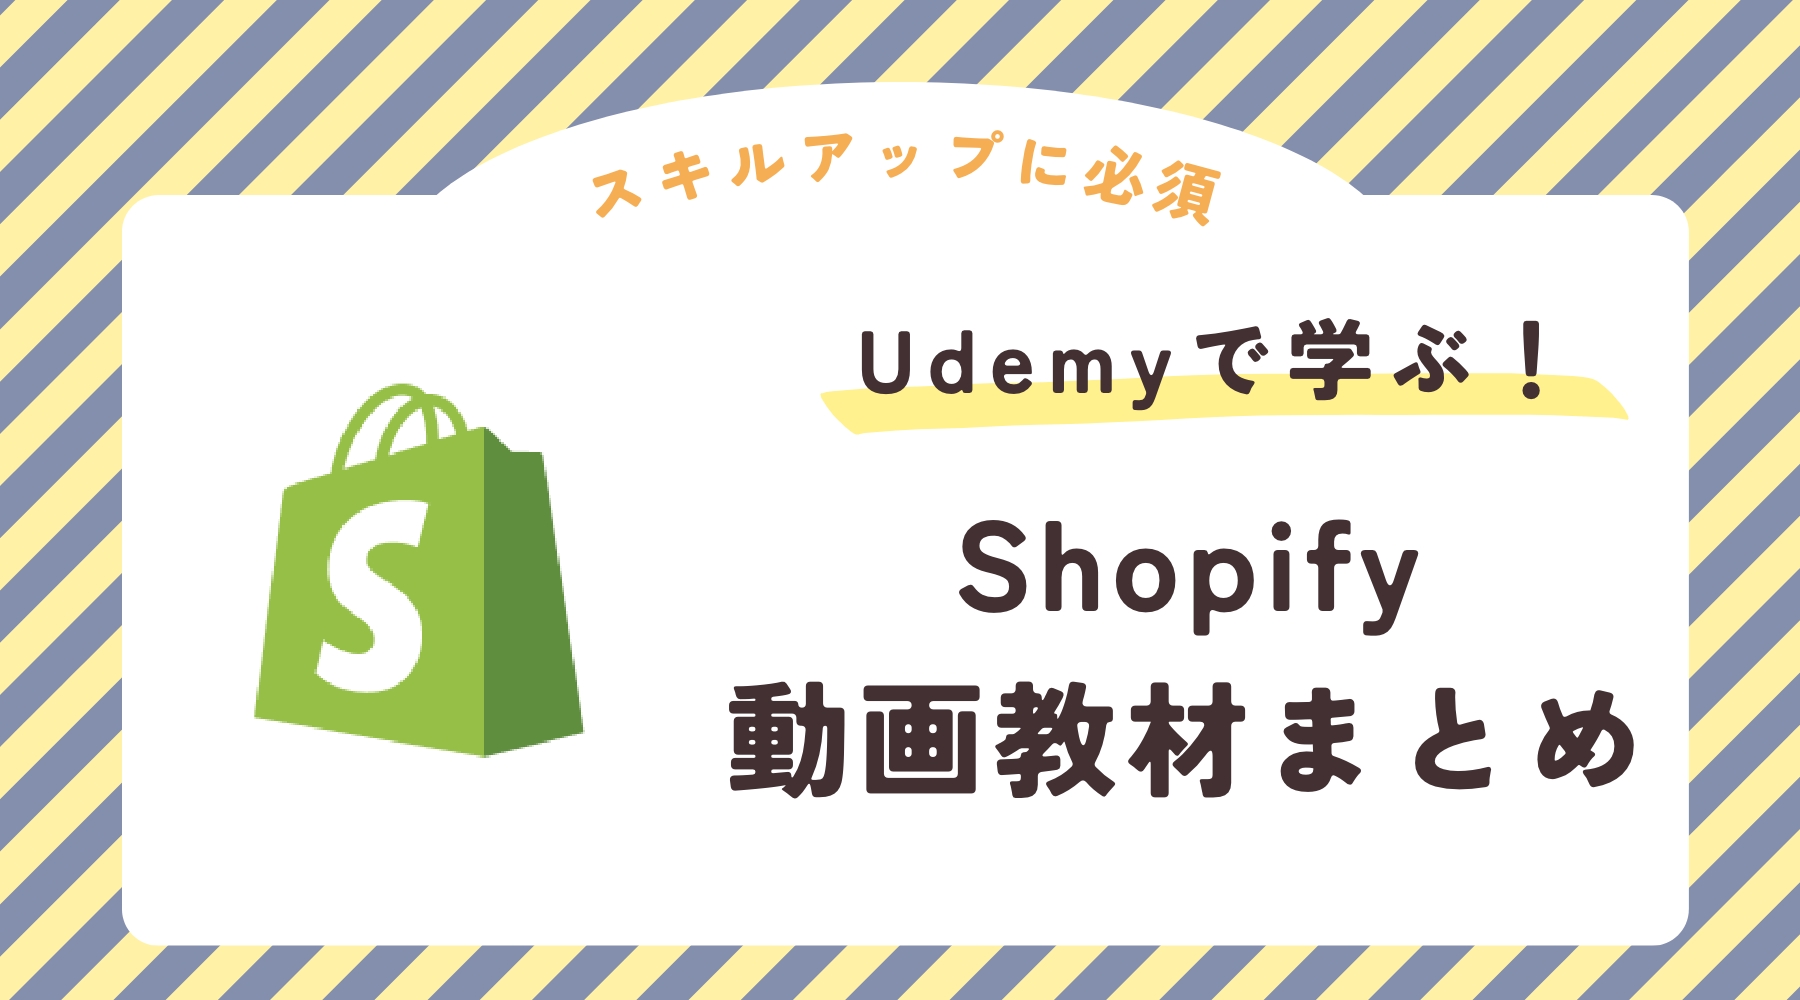 Shopify Udemy 動画教材　おすすめ ユーデミー